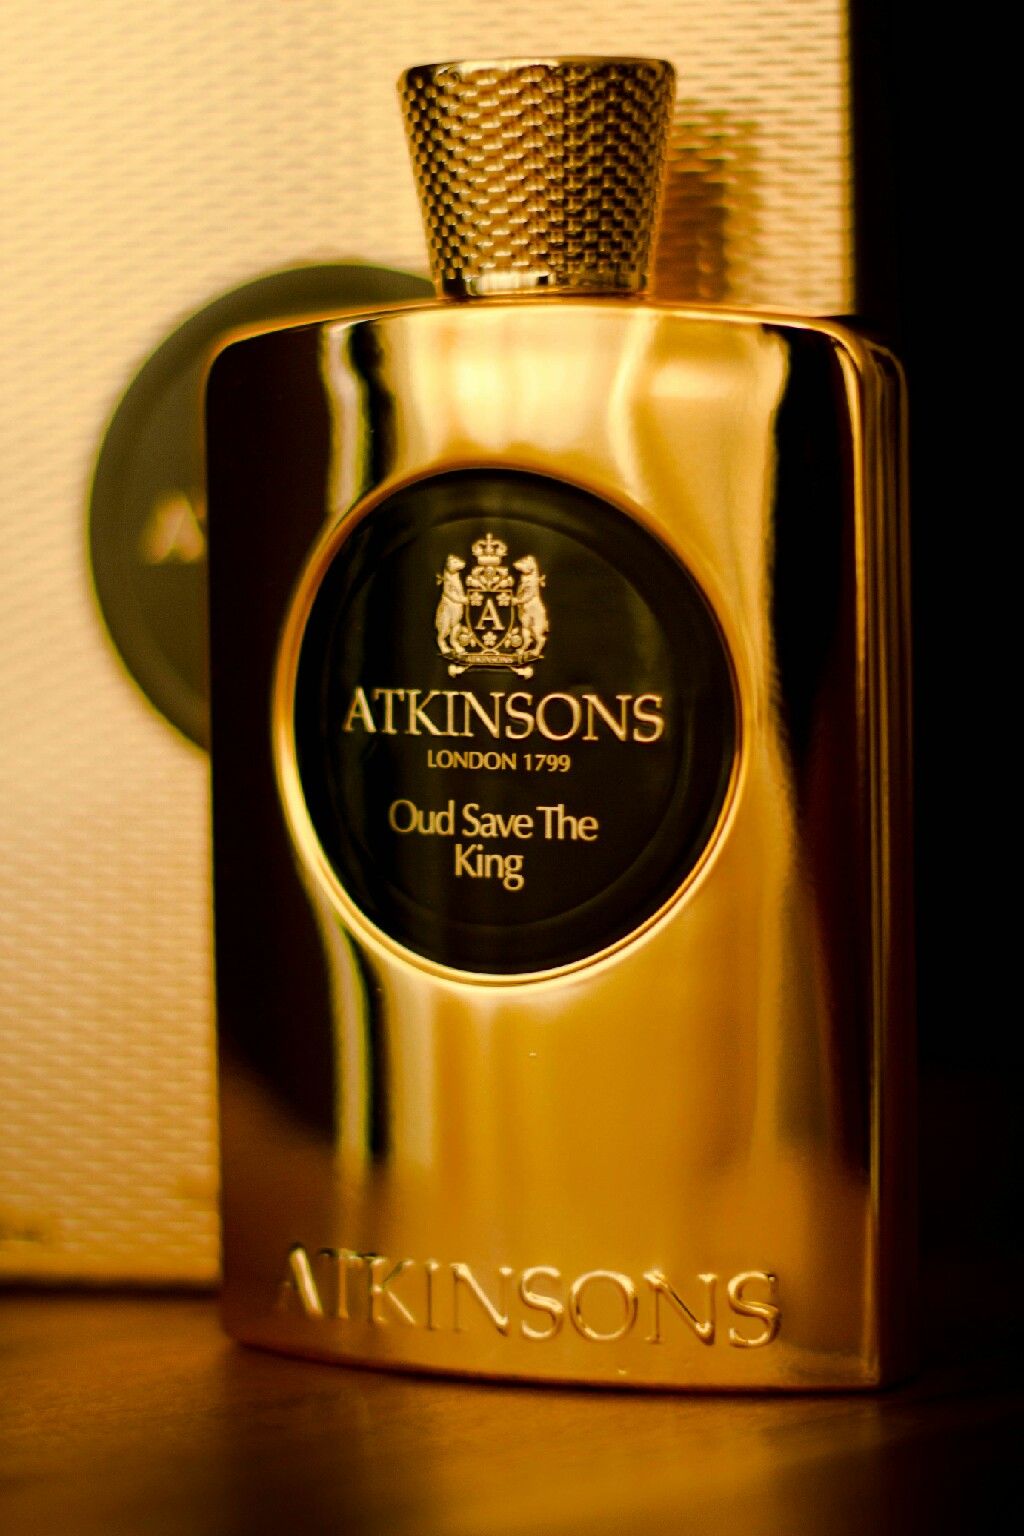 Oud Save The King - Atkinsons  for women and men kadınlar ve erkekler için  2013 kutu şişe...jpg